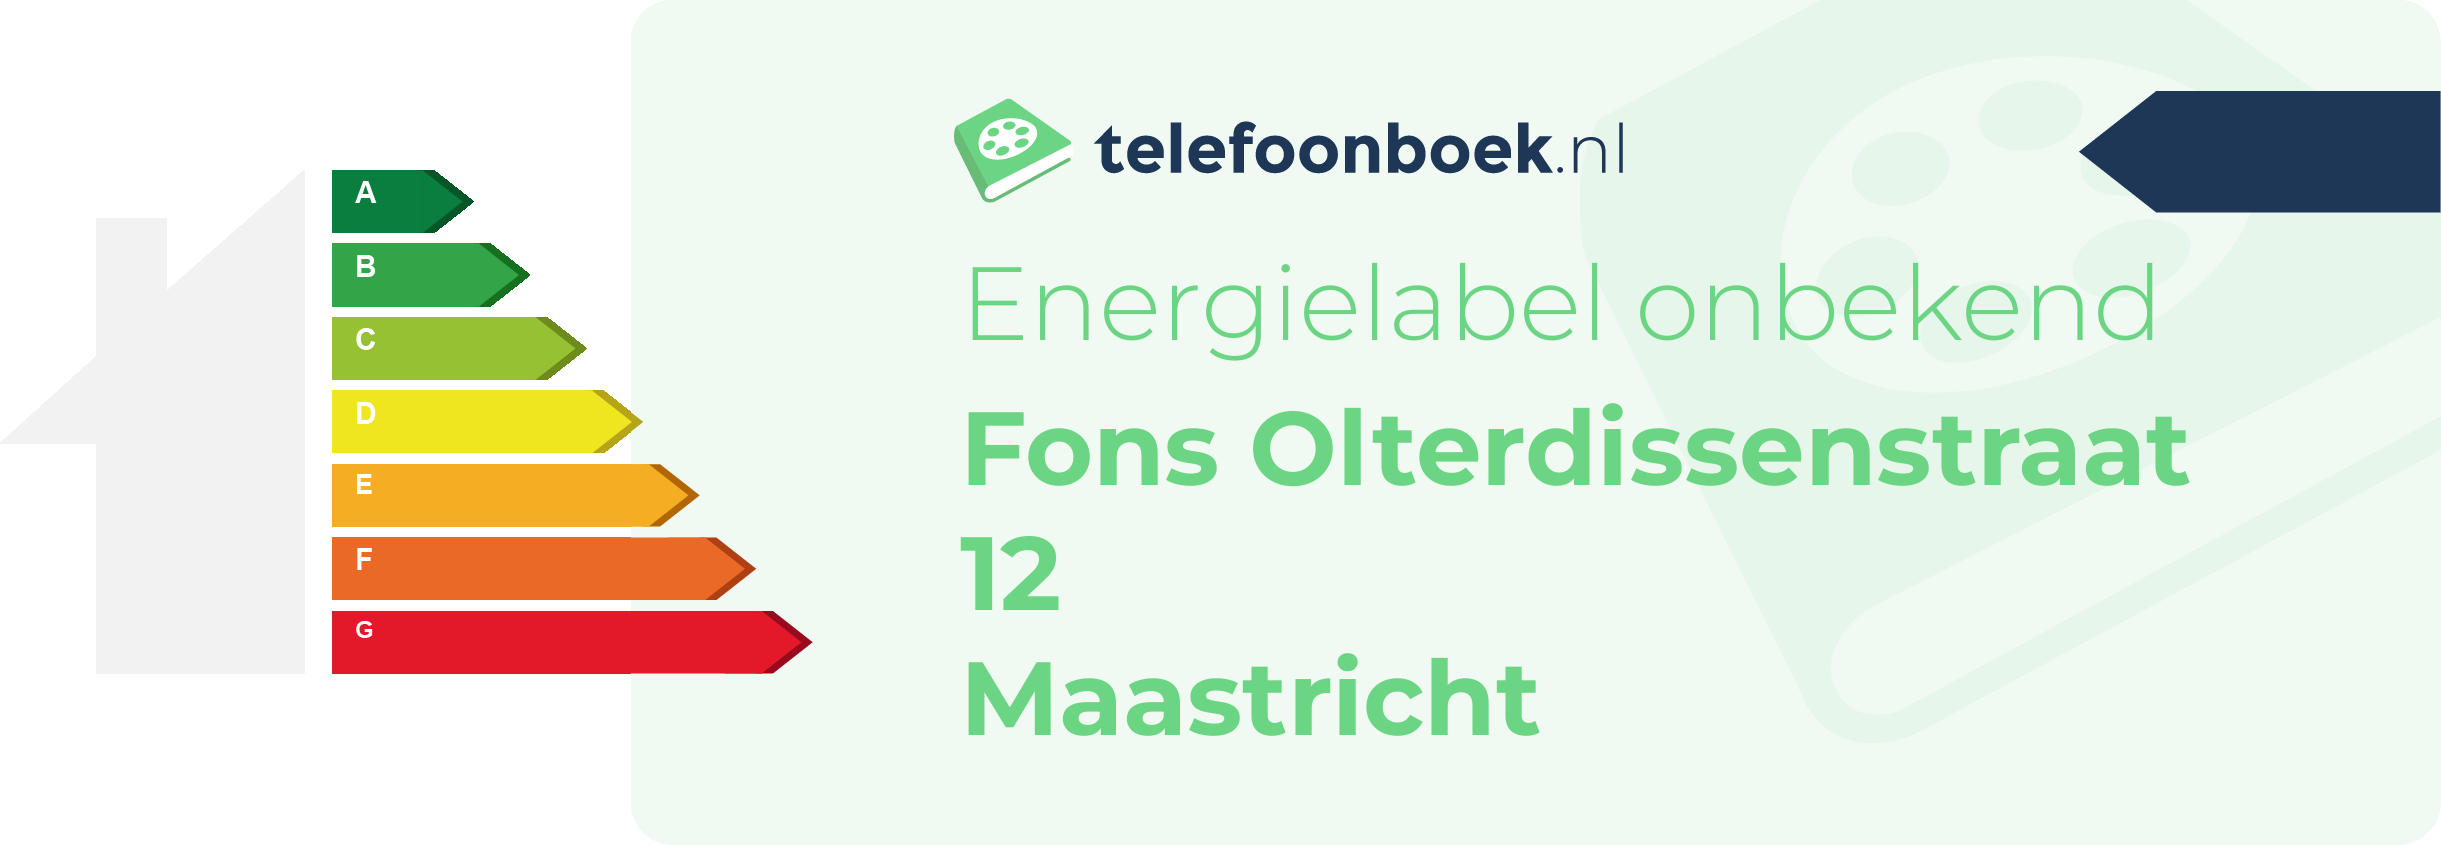 Energielabel Fons Olterdissenstraat 12 Maastricht